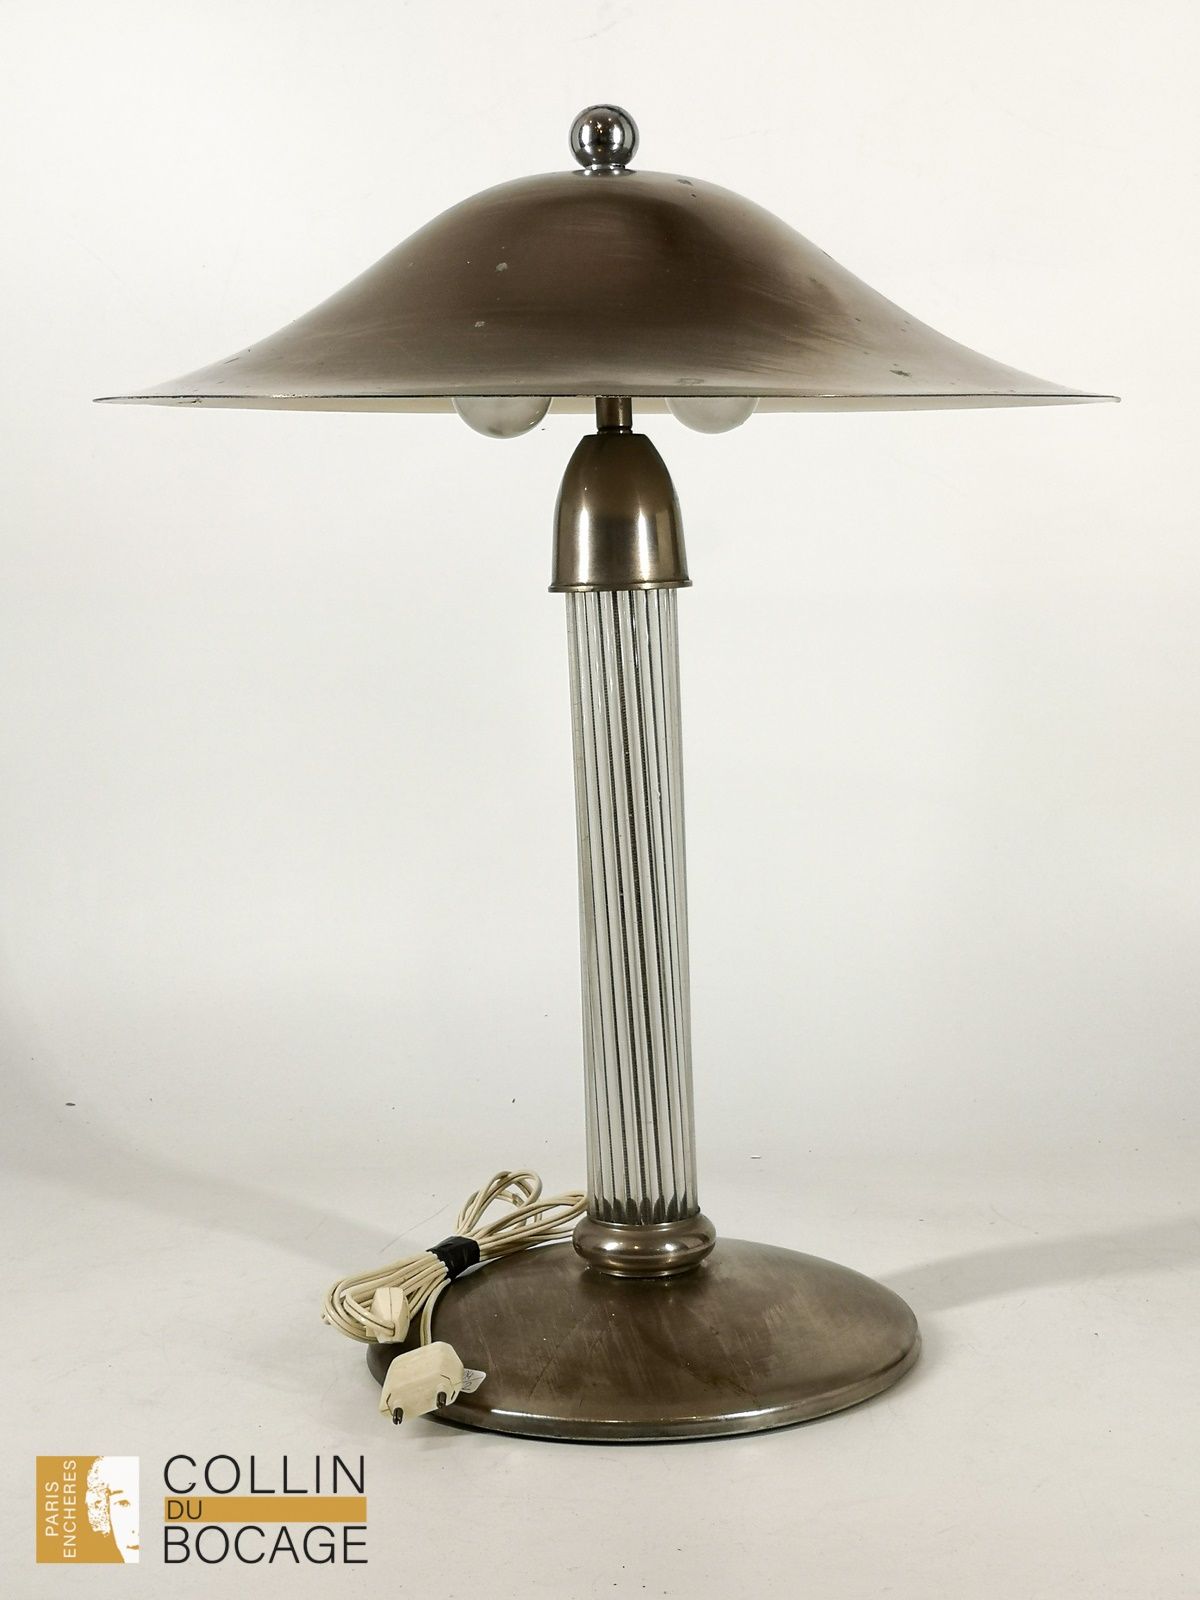 Null Lampe "faisceau"
Métal
Epoque Art Déco
H : 53 cm, D : 44 cm
(traces d'oxyda&hellip;